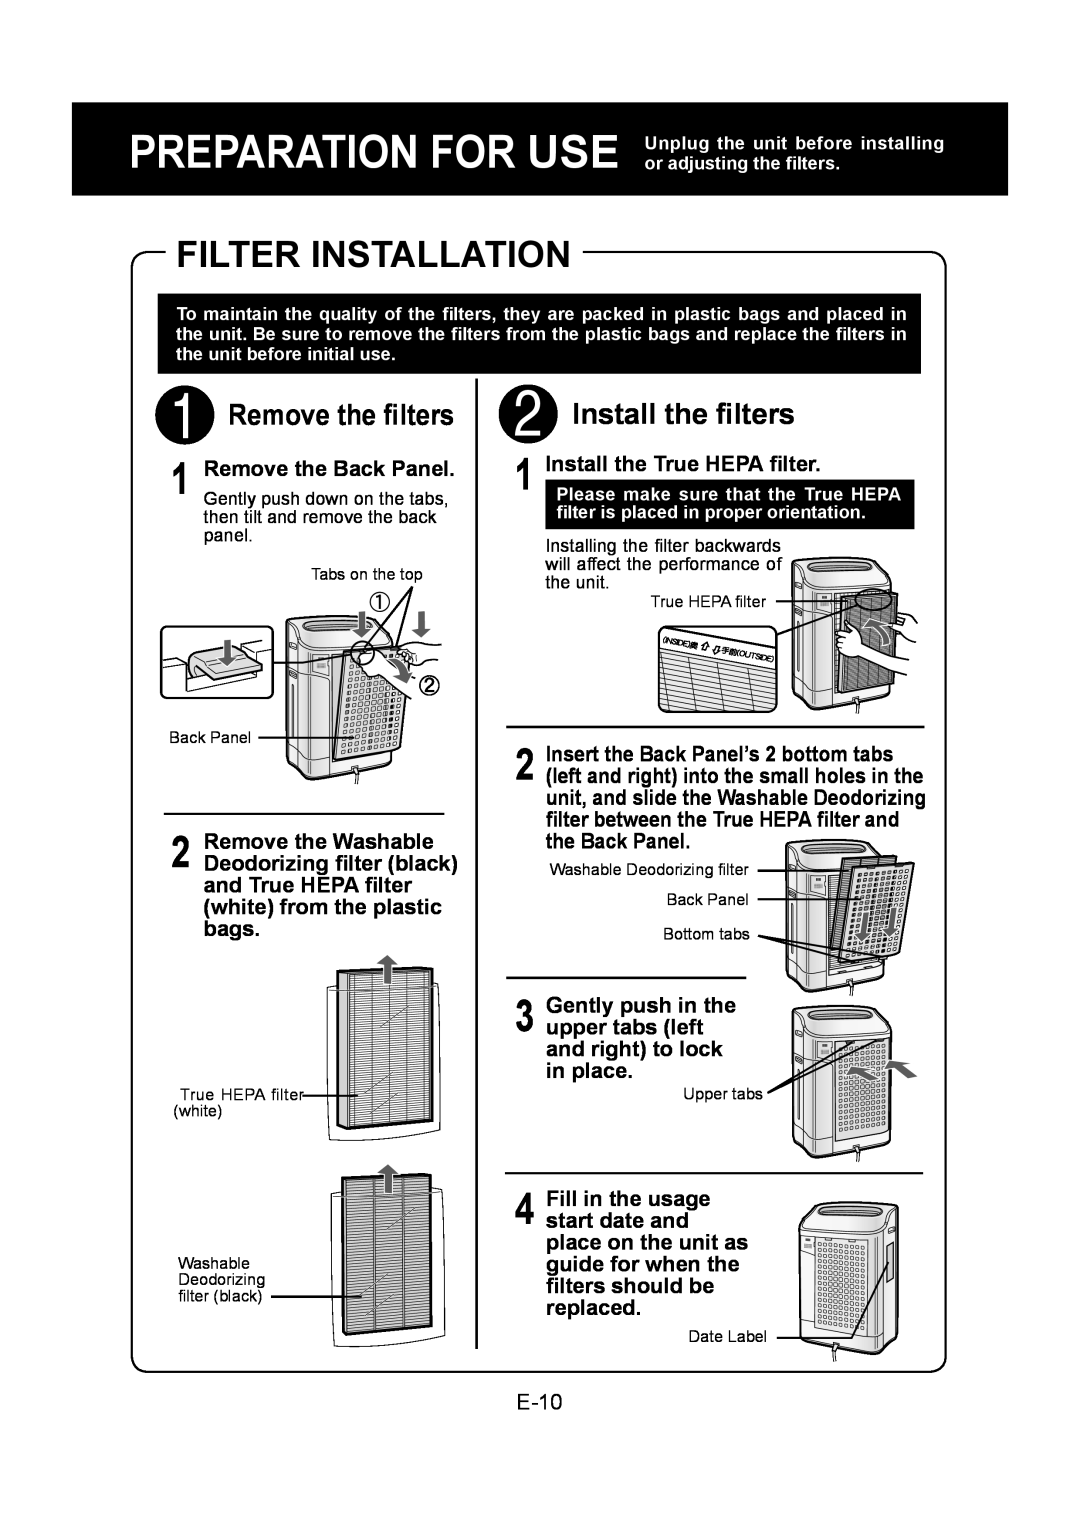 Sharp KC-860U operation manual Filter Installation, Remove the ﬁlters, Install the ﬁlters, Install the True HEPA ﬁlter 